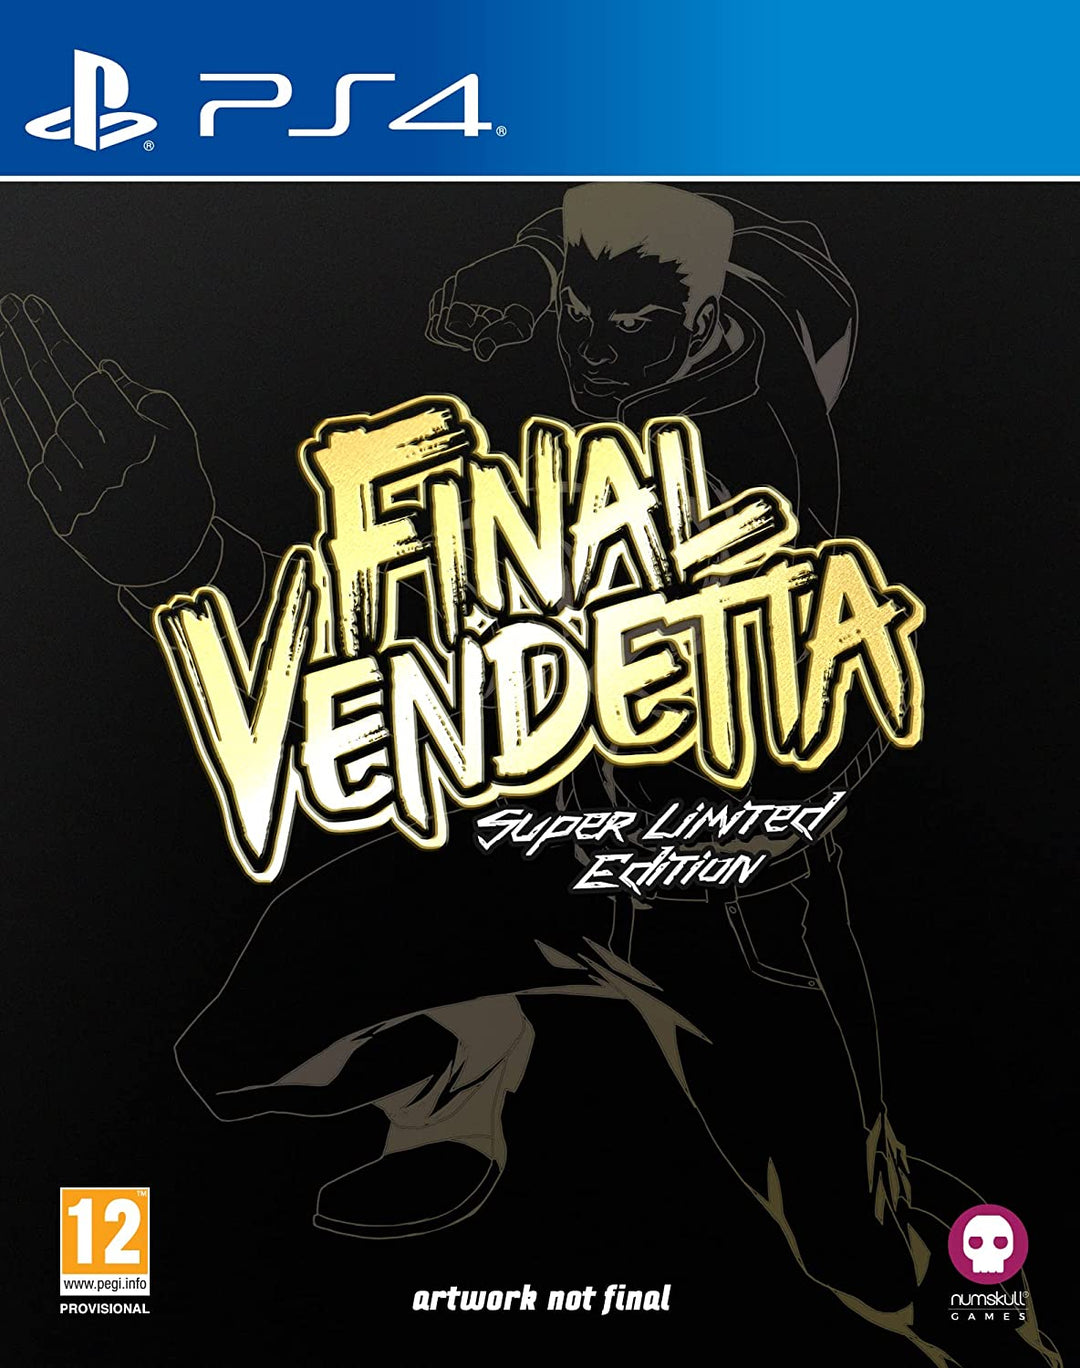 Final Vendetta – Super Limited Edition